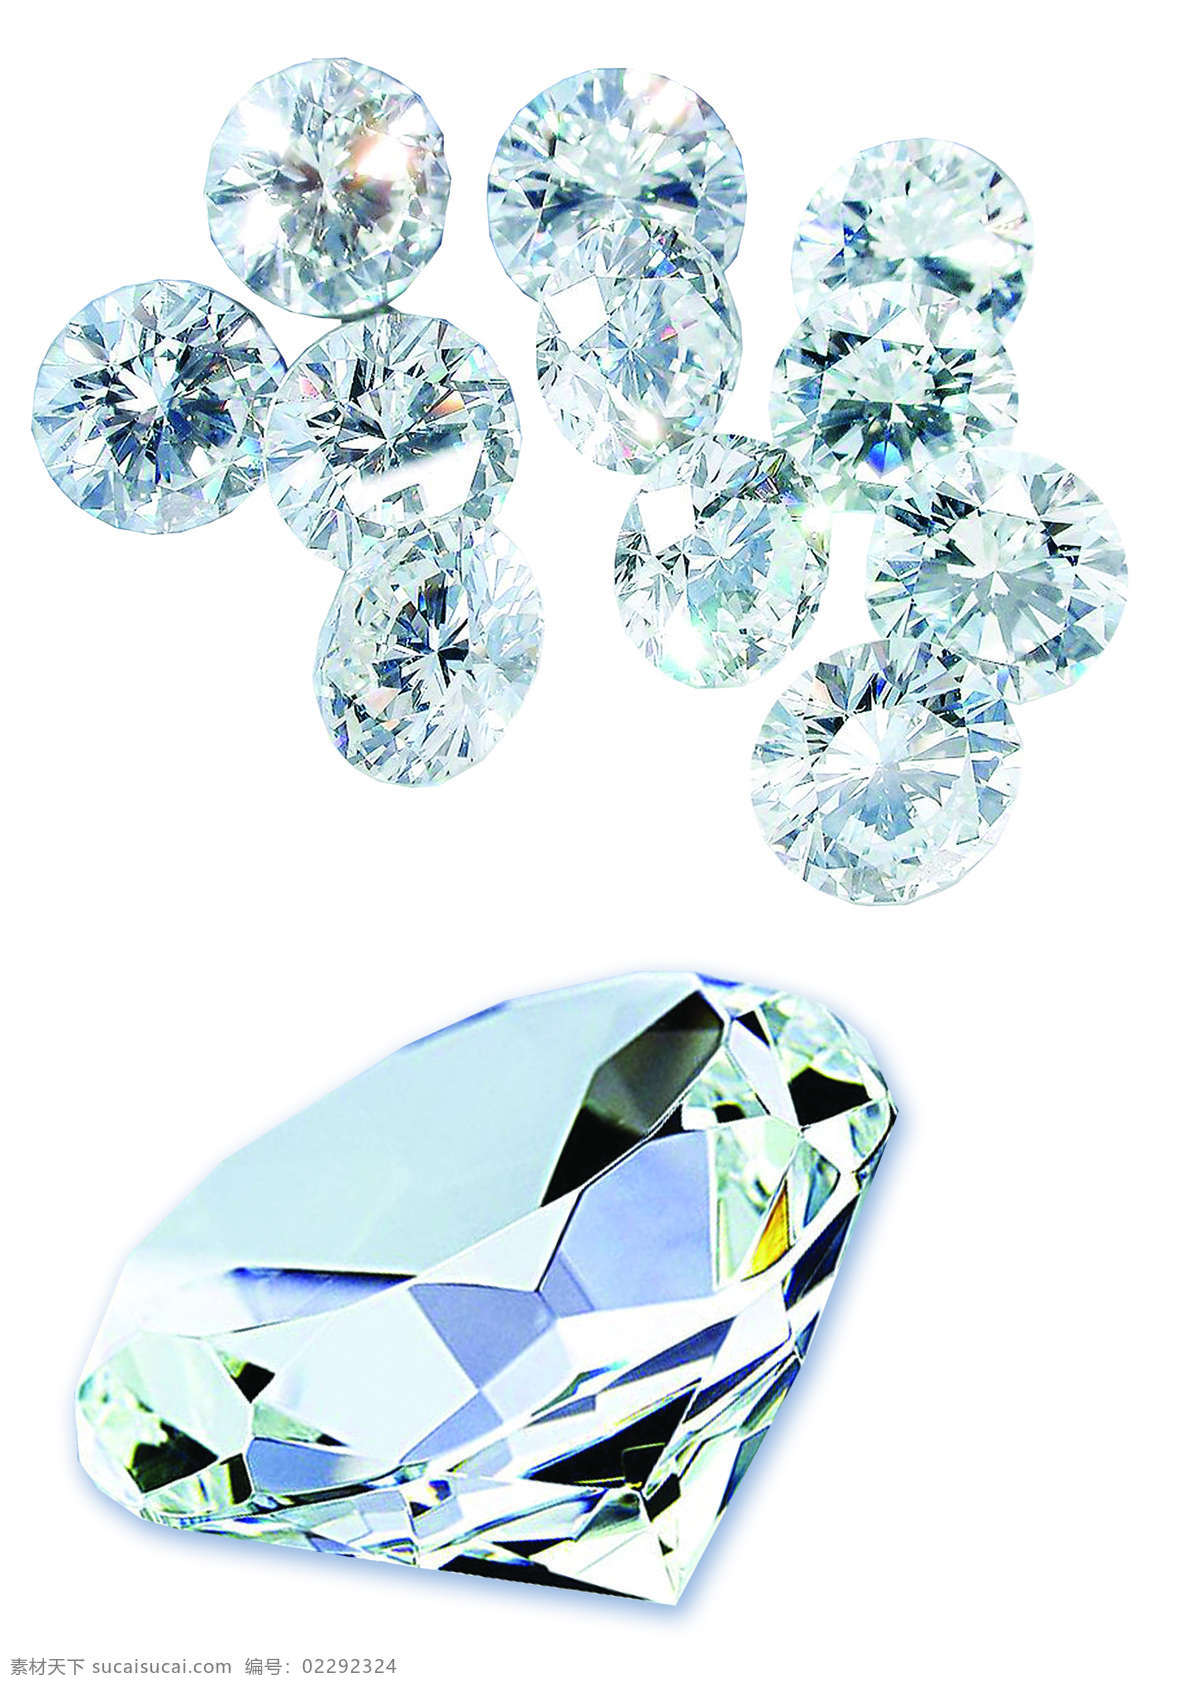 高清 钻 石图 白底 白底背景 白底素材 珠宝 珠宝首饰 钻石 钻石的图片